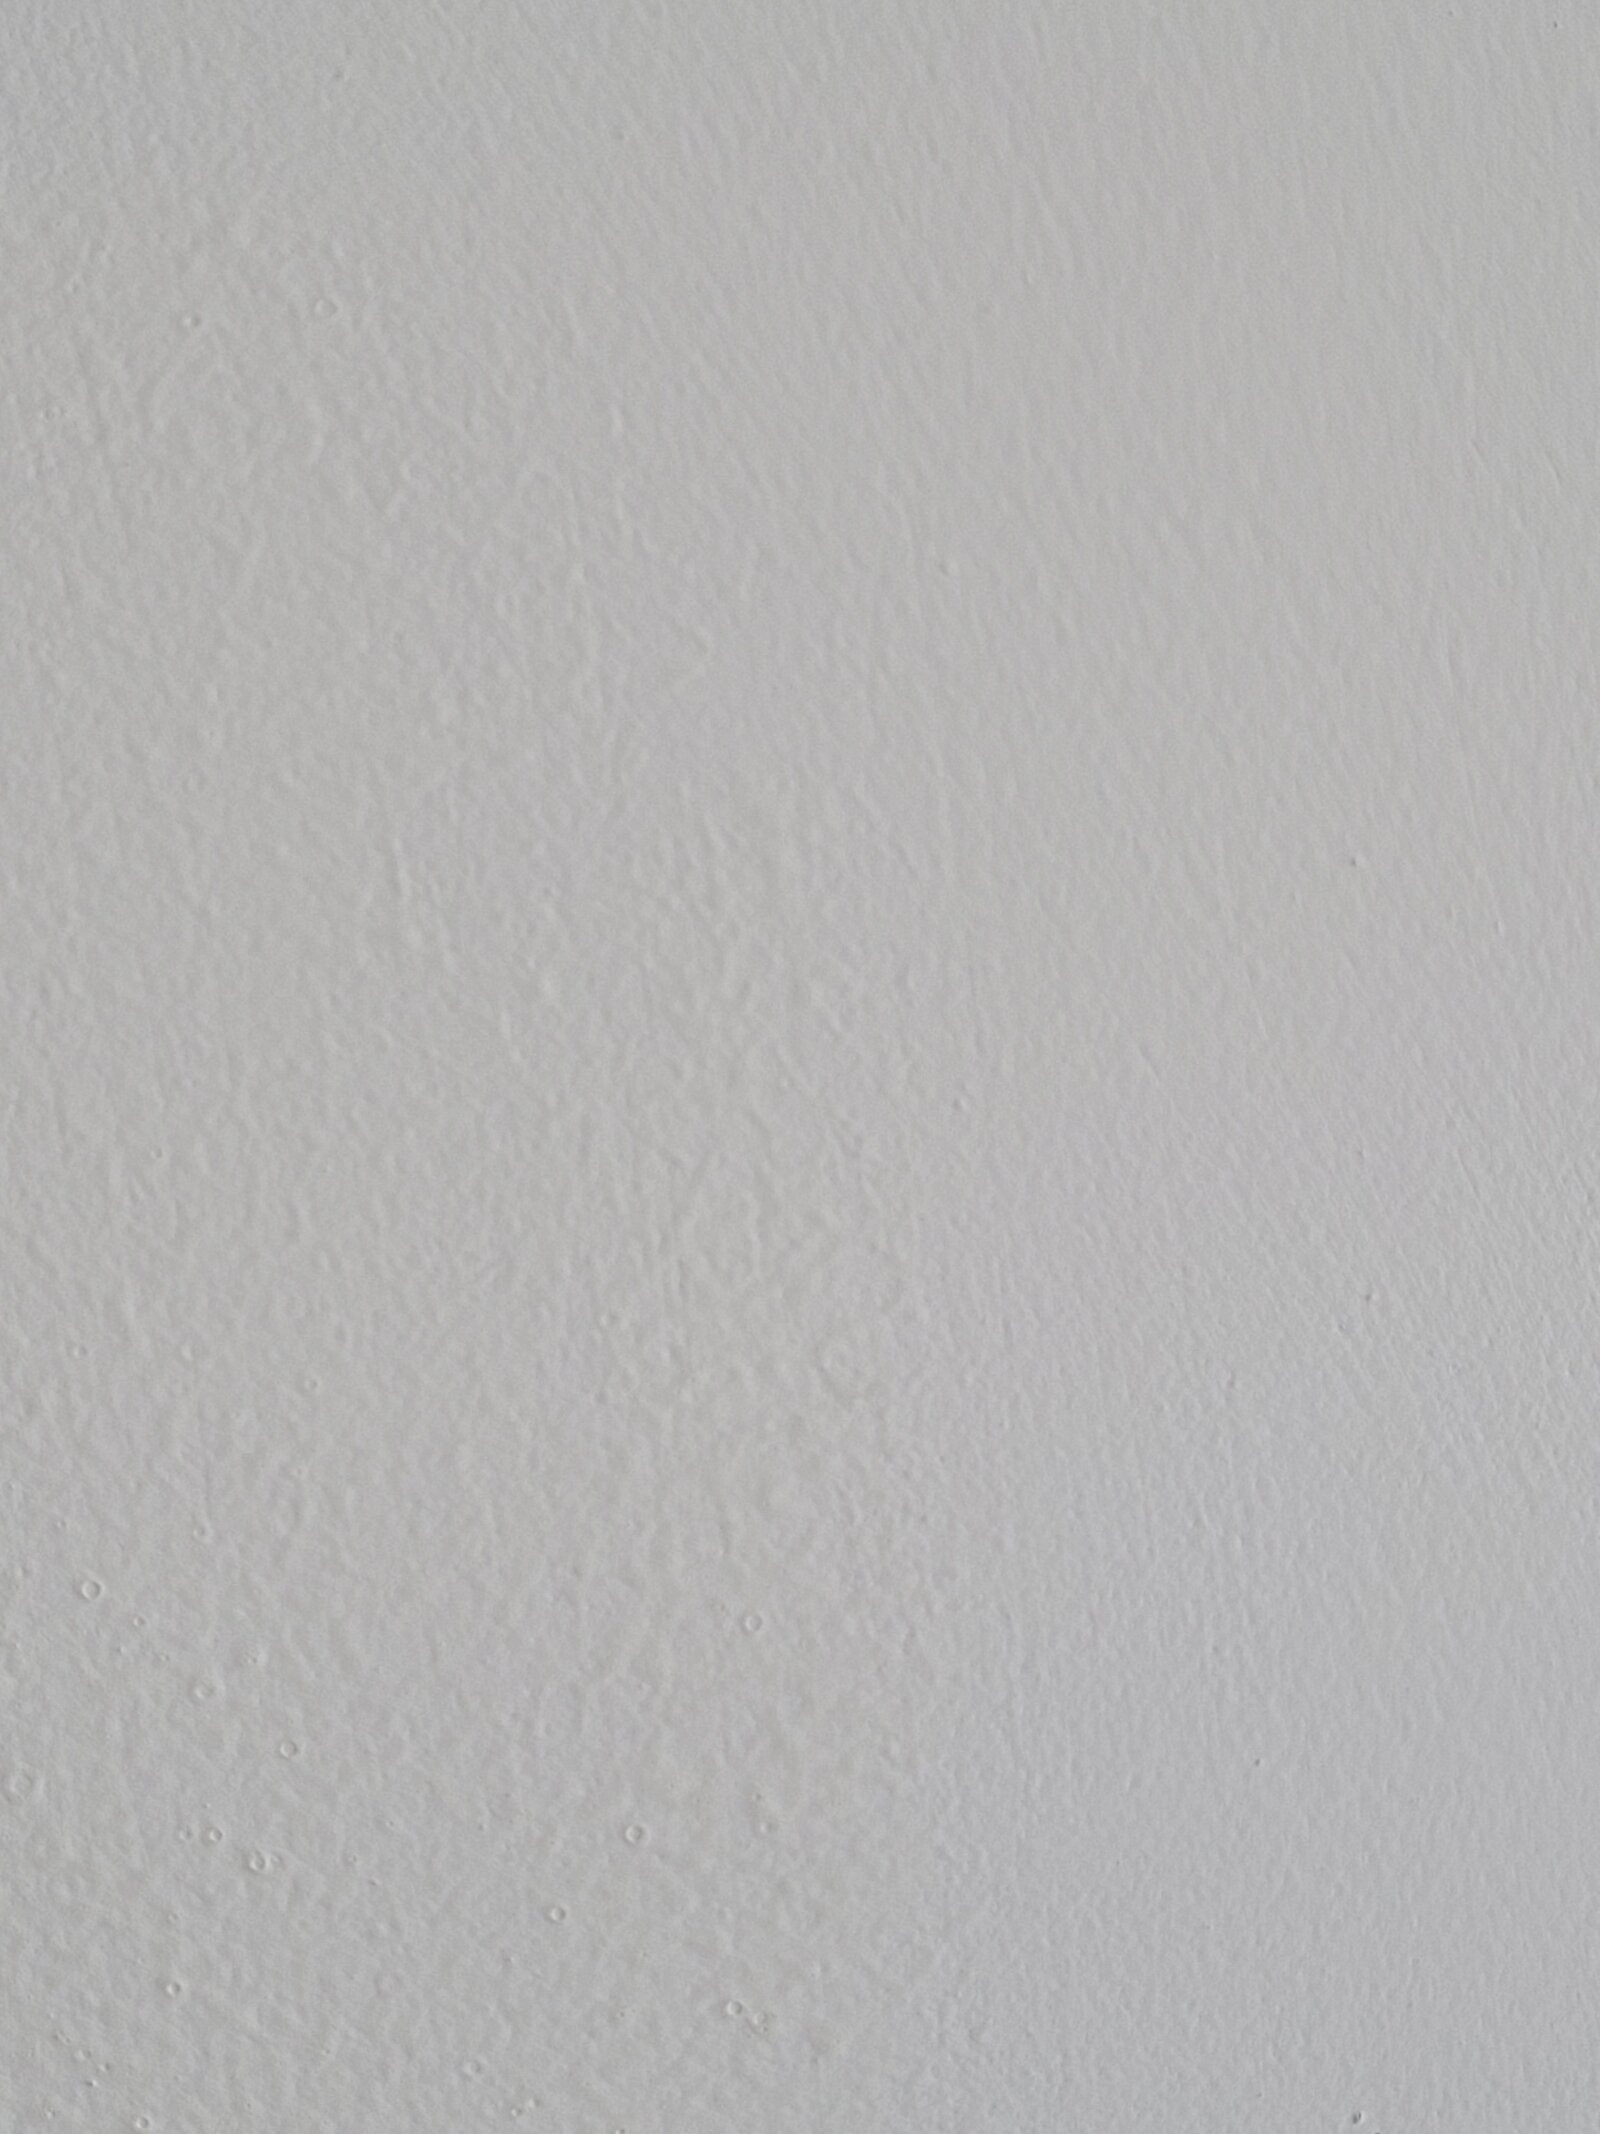 Tư vấn] Tường nhà e mới sơn bị sần sùi bọt khí | VOZ